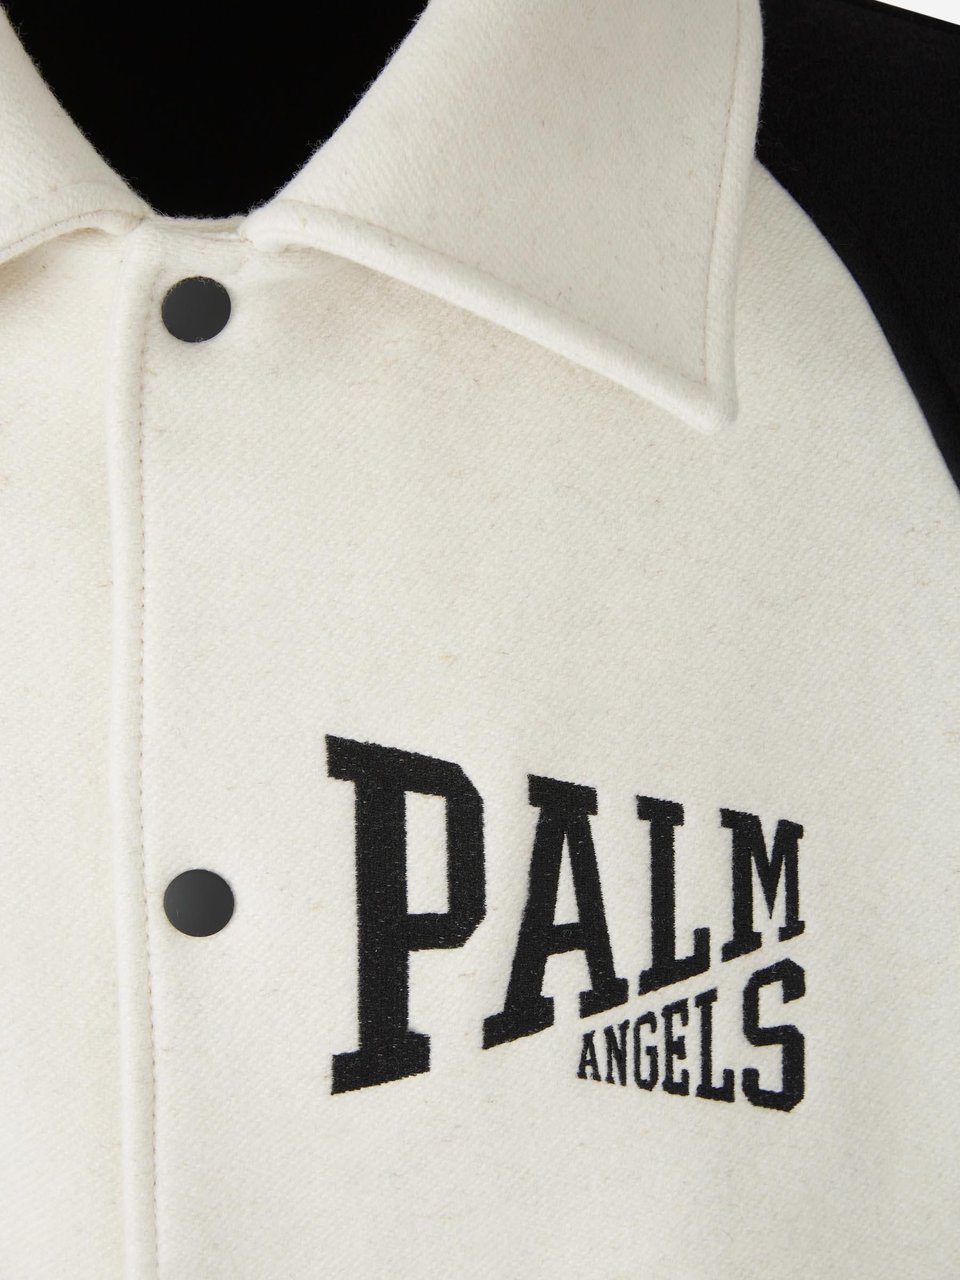 Palm Angels Wool Varsity Jacket Beige